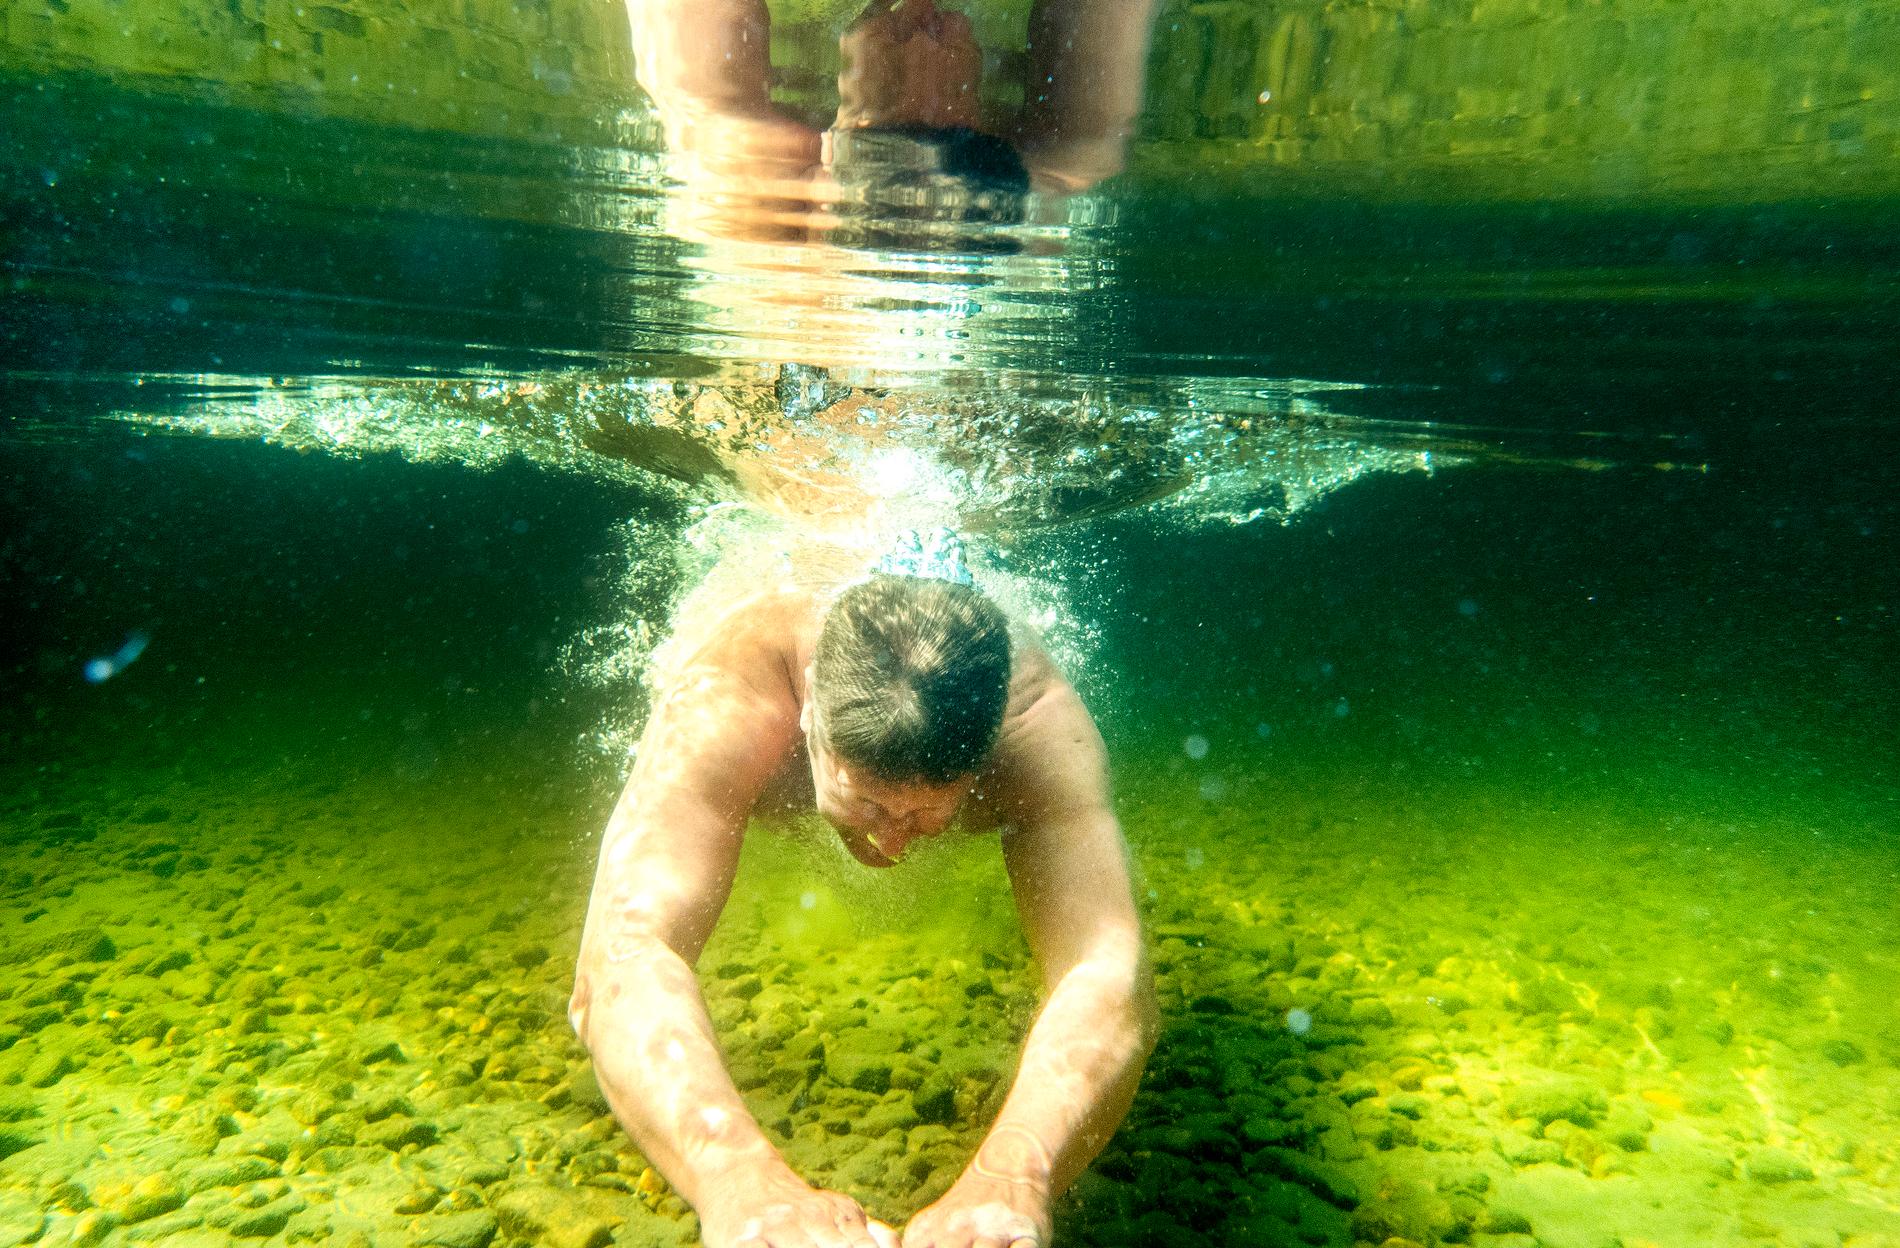 Förutom att kanske ta några simtag under vattnet bör man helst försöka att hålla sig ganska lugn när det är varmt. Meteoroligen Anna Latvala avråder från att sporta.